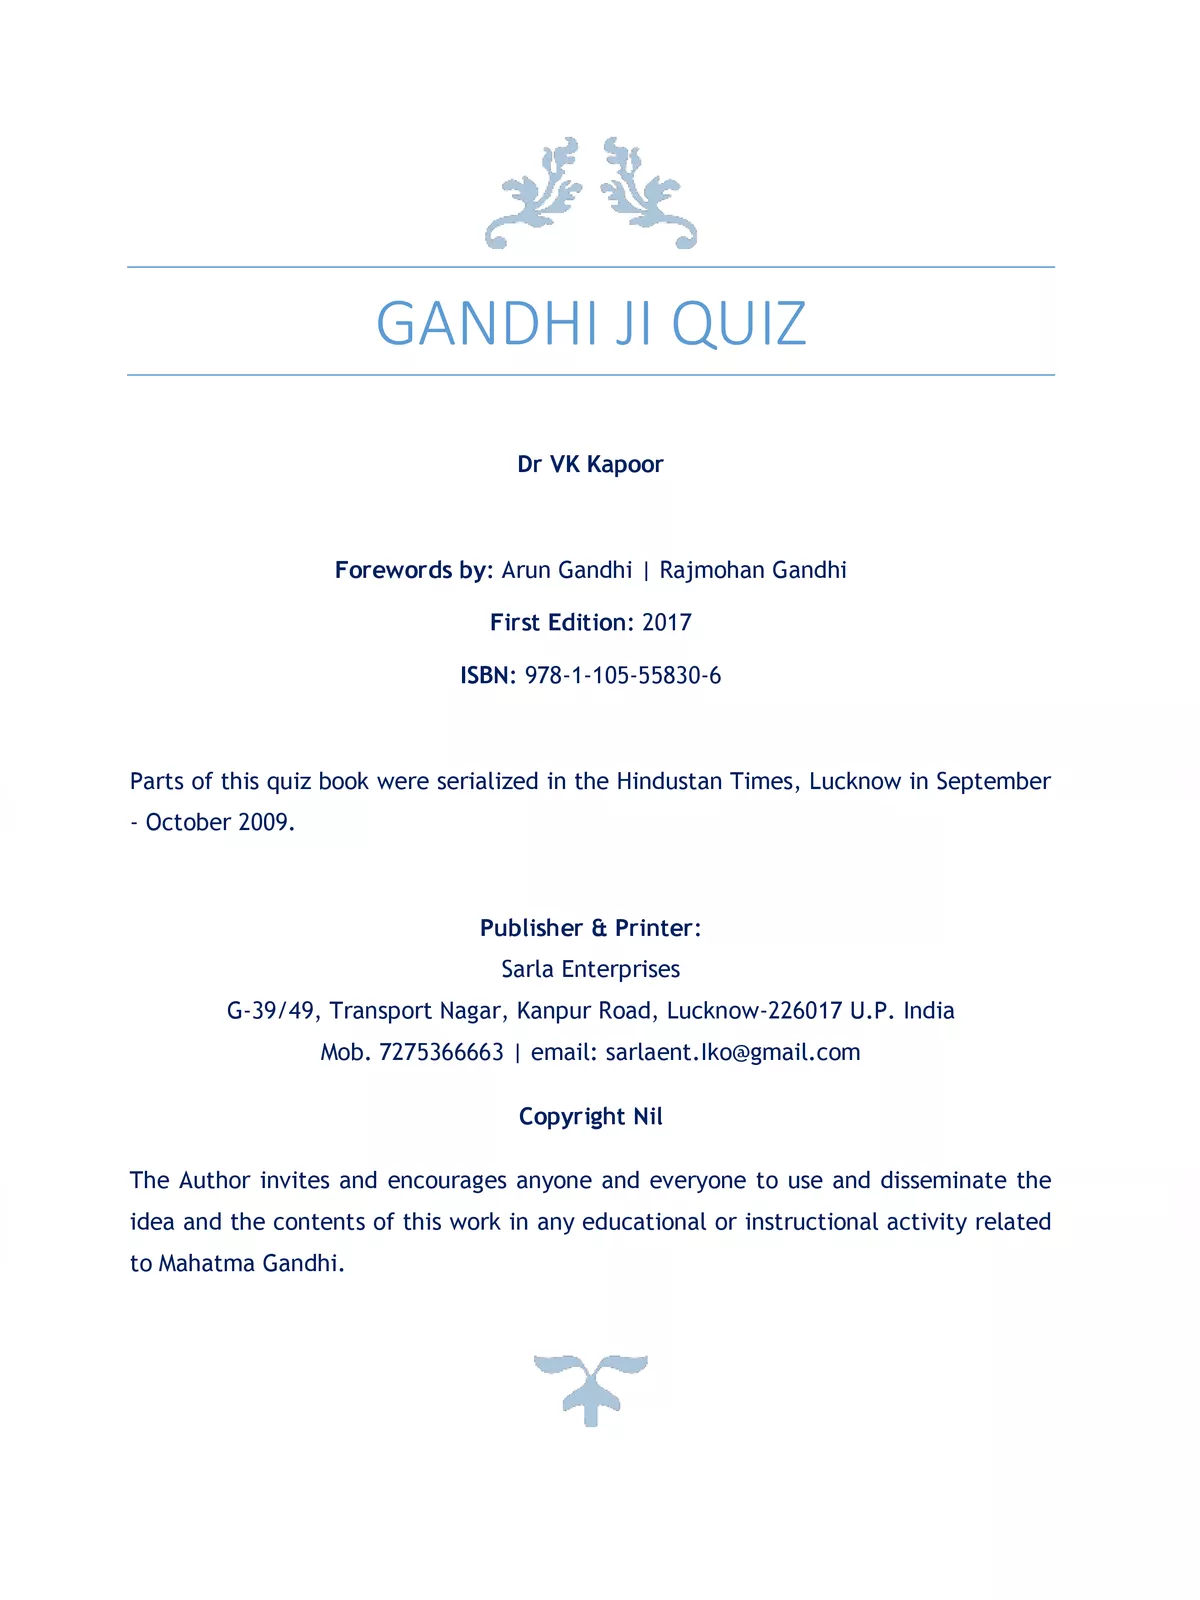 Gandhi Quiz